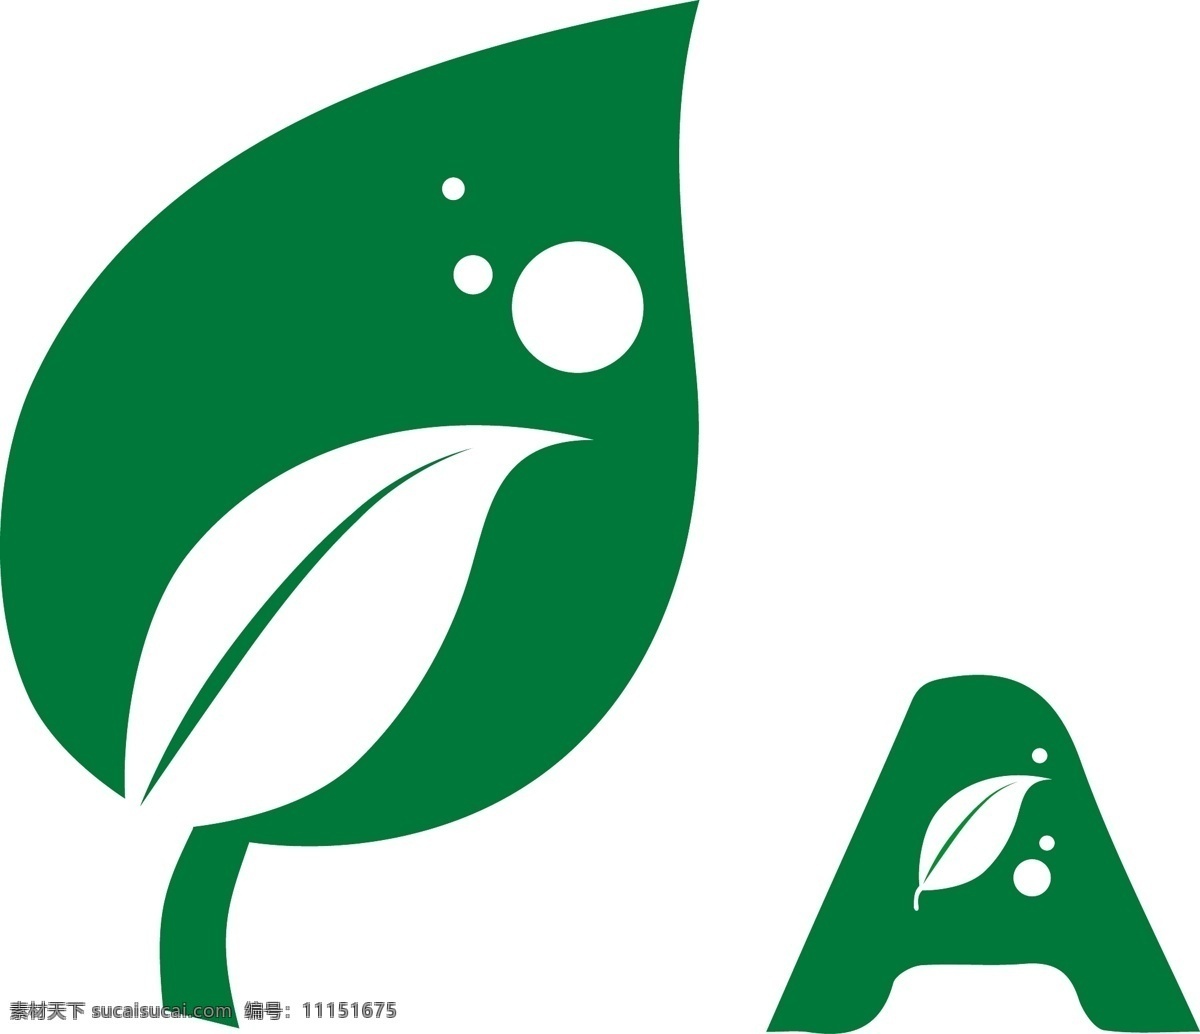 绿色 叶子 logo 矢量 vi 版式 标志 标准 插画 抽象 创意 模板下载 绿色logo 环保 树叶 植物 生态 fj